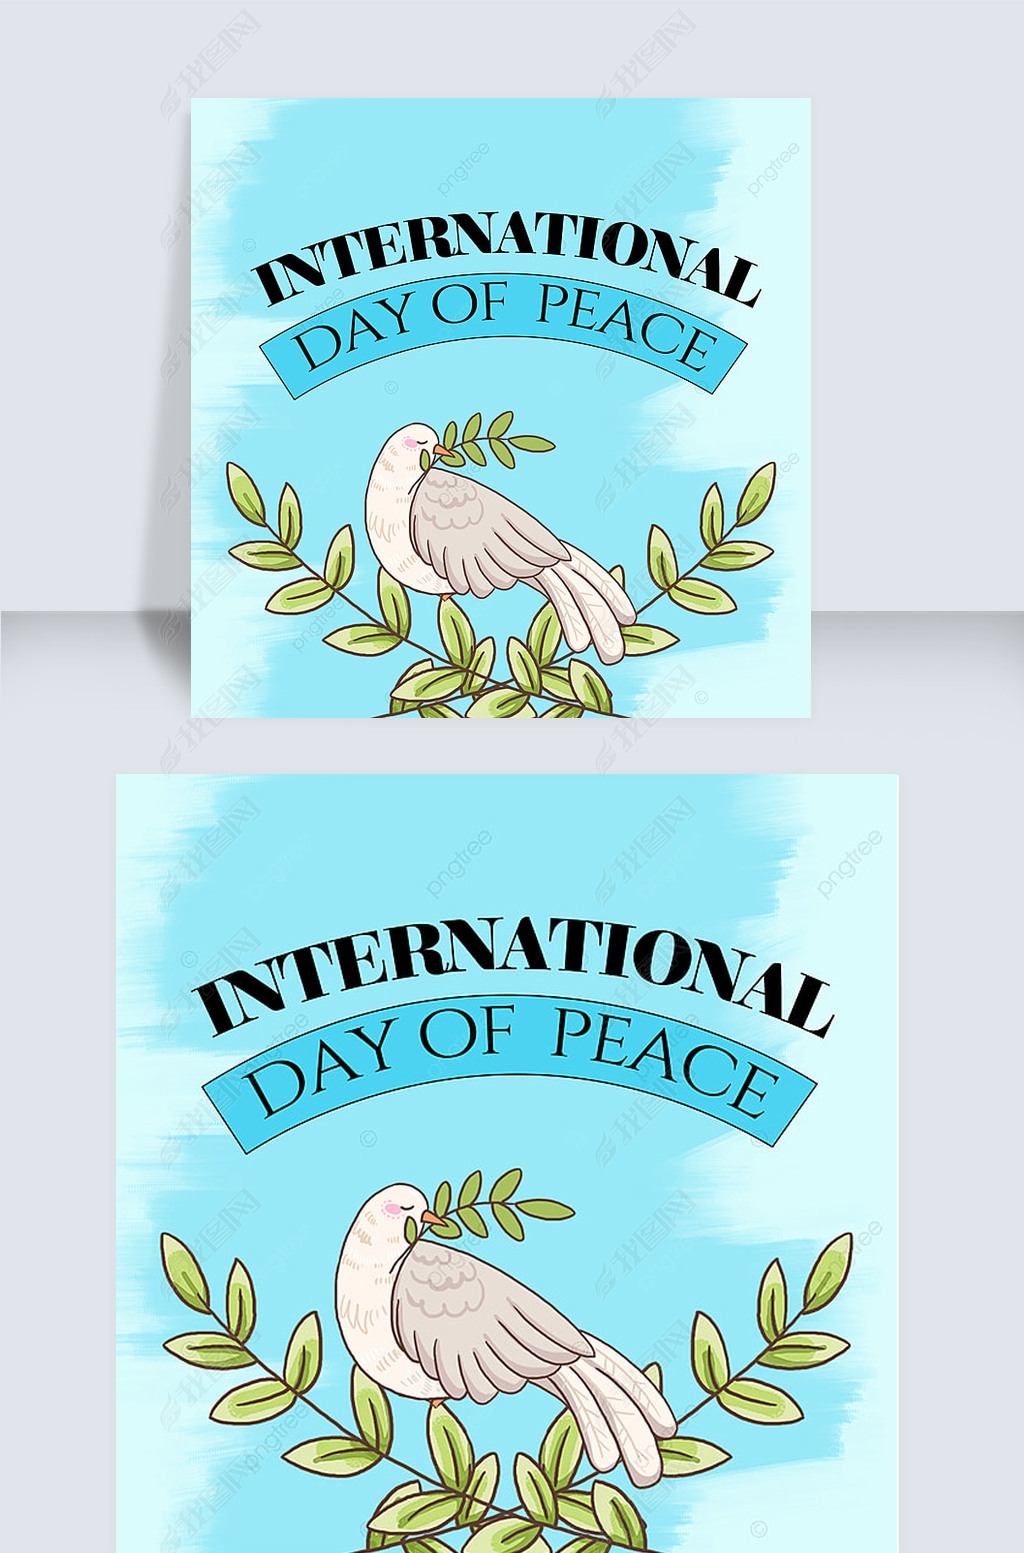 ոinternational day of peace